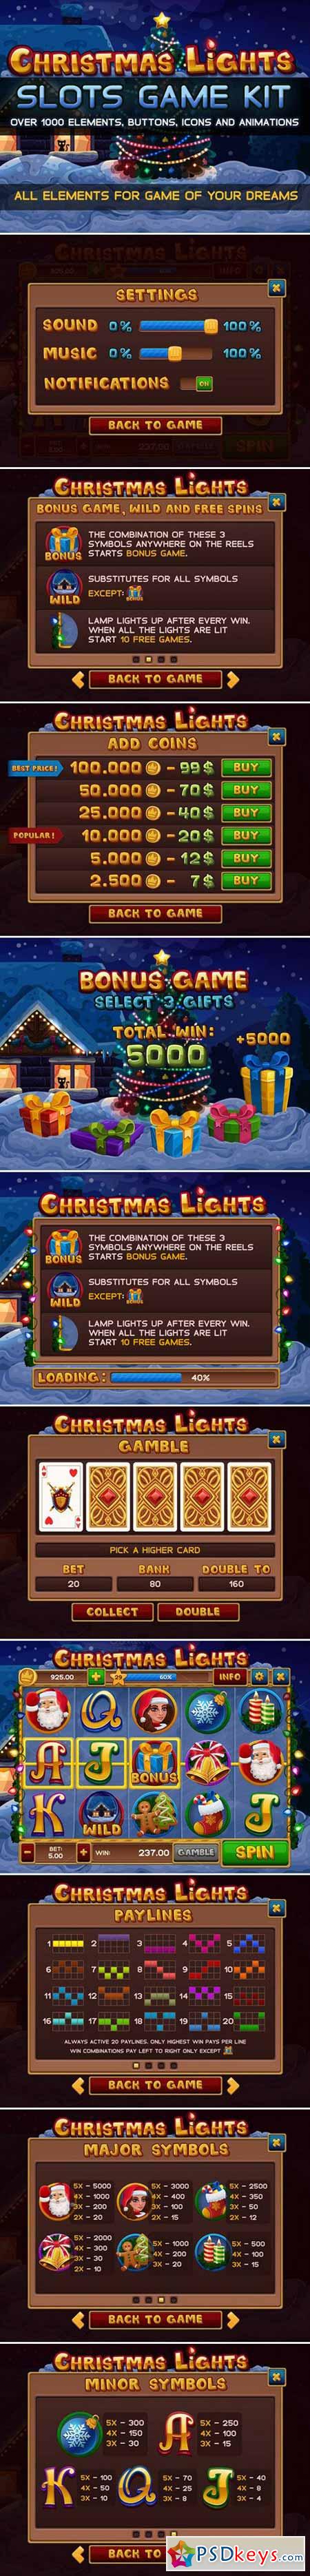 Christmas lights slots game kit 431548